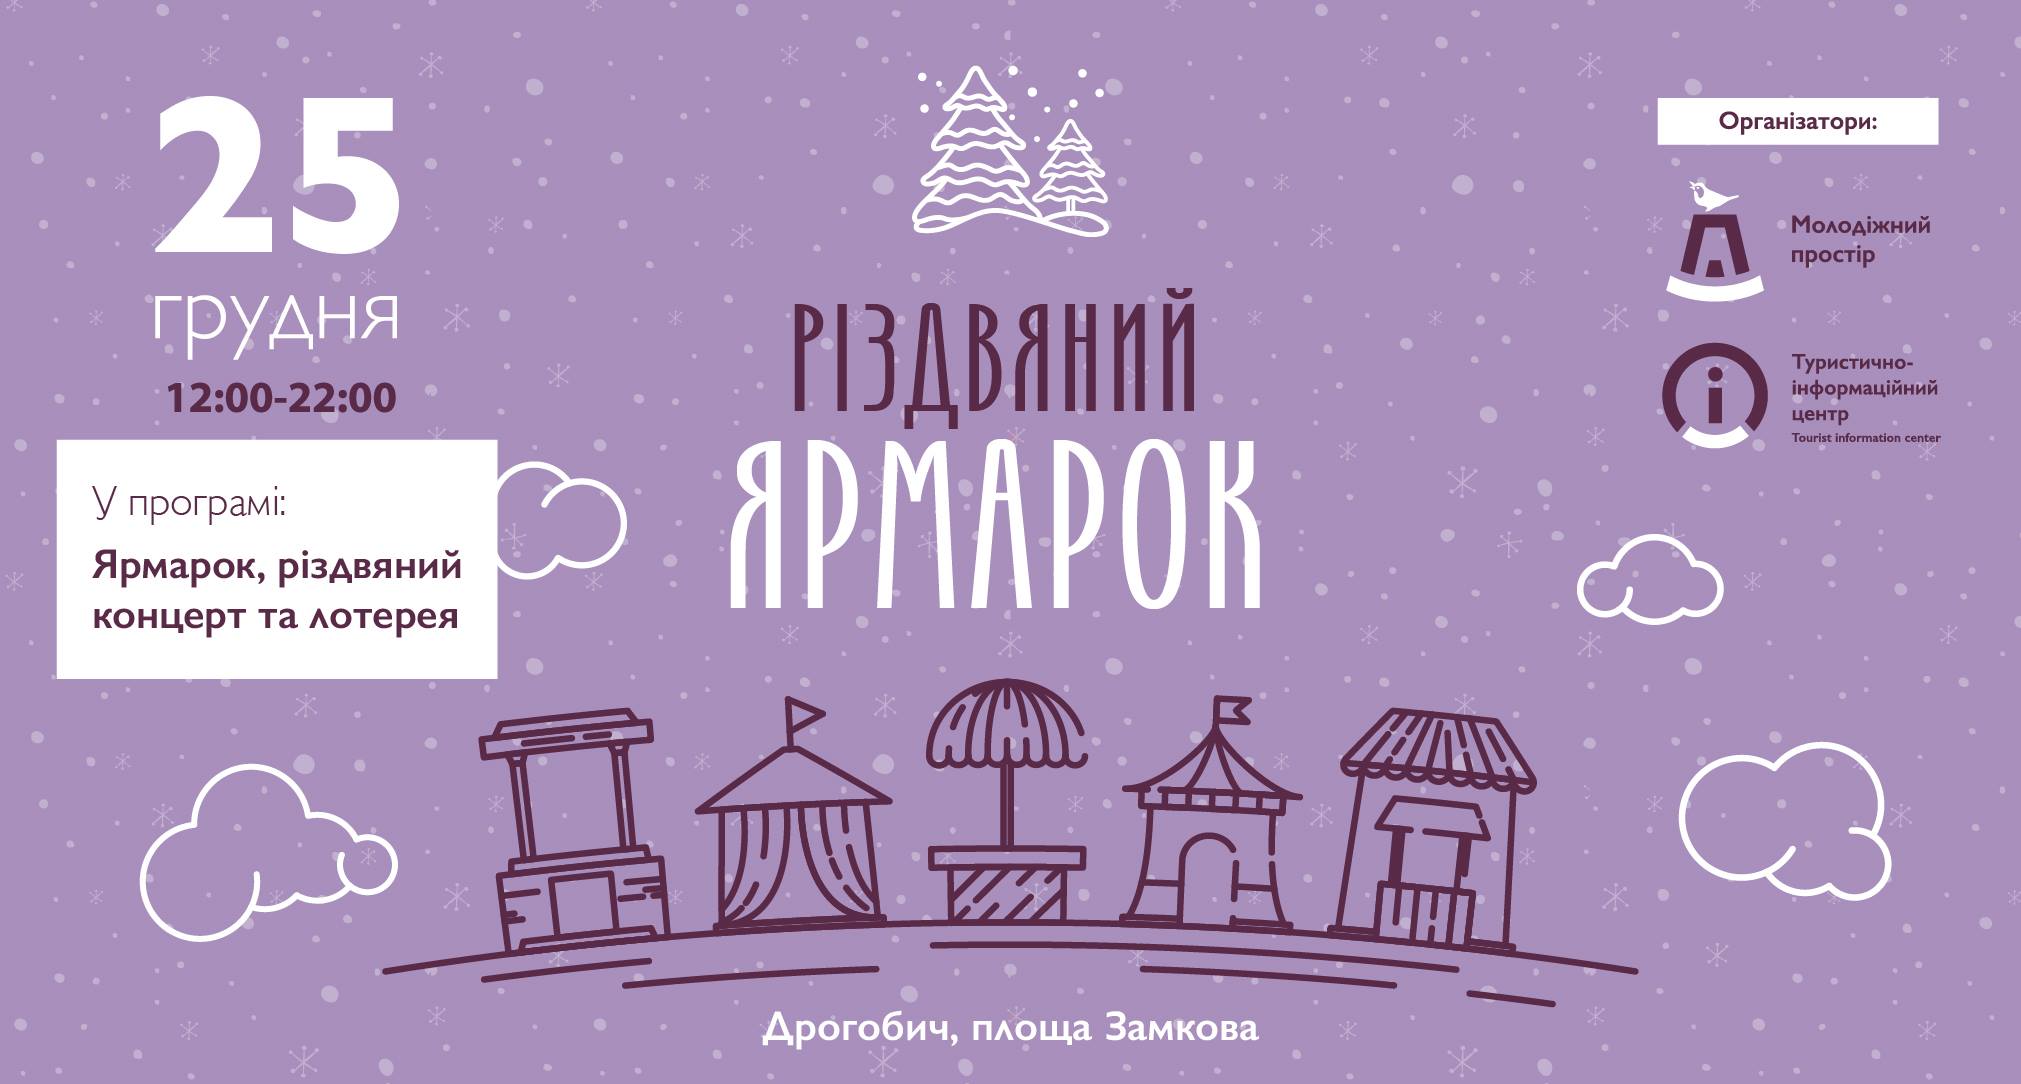 25 грудня у Дрогобичі відбудеться Різвяний ярмарок